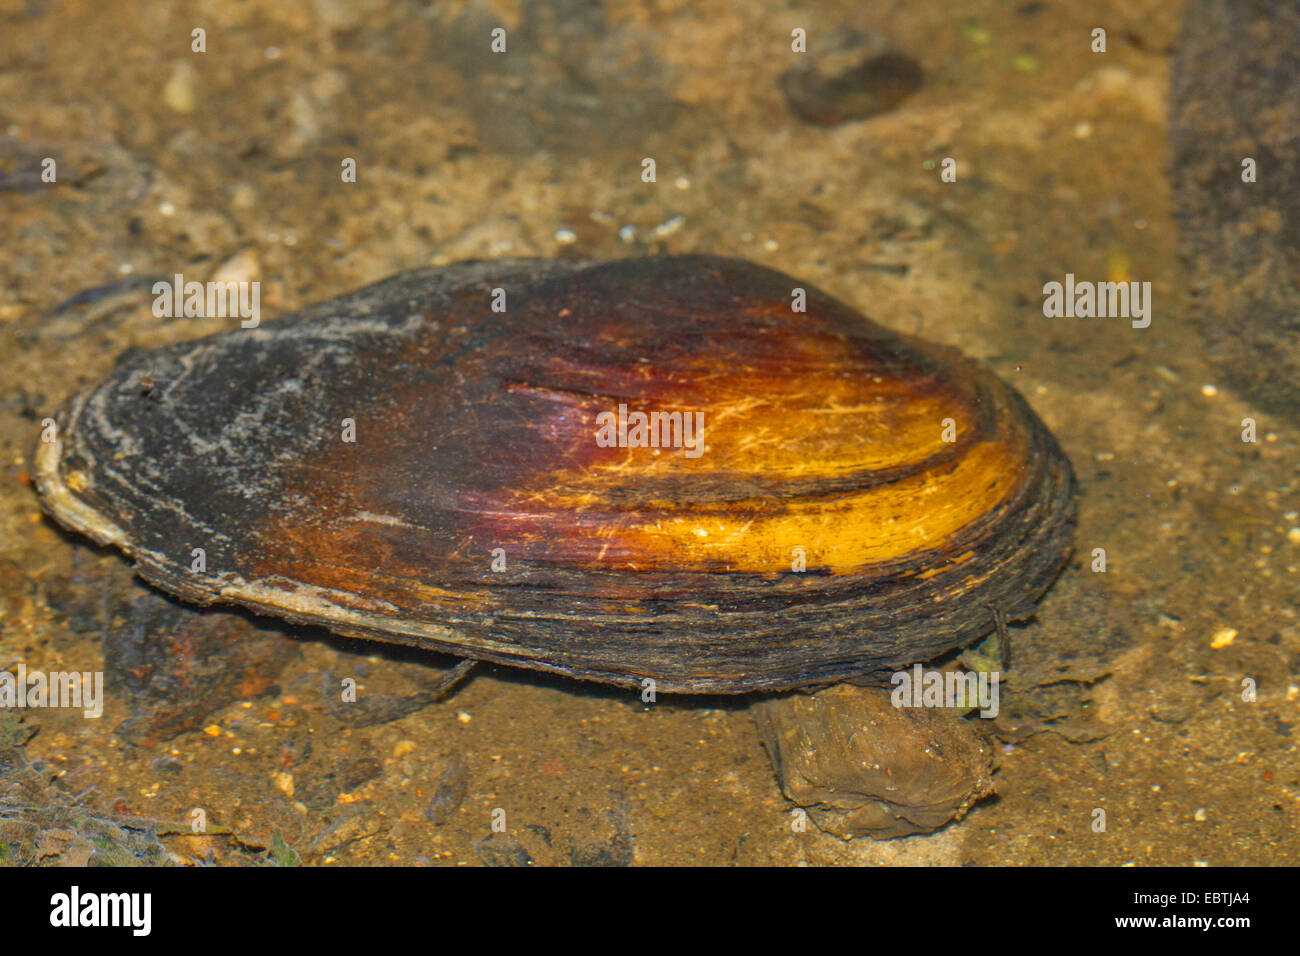 swan mussel (Anodonta cygnea), in shallow water, Germany, Mecklenburg-Western Pomerania Stock Photo